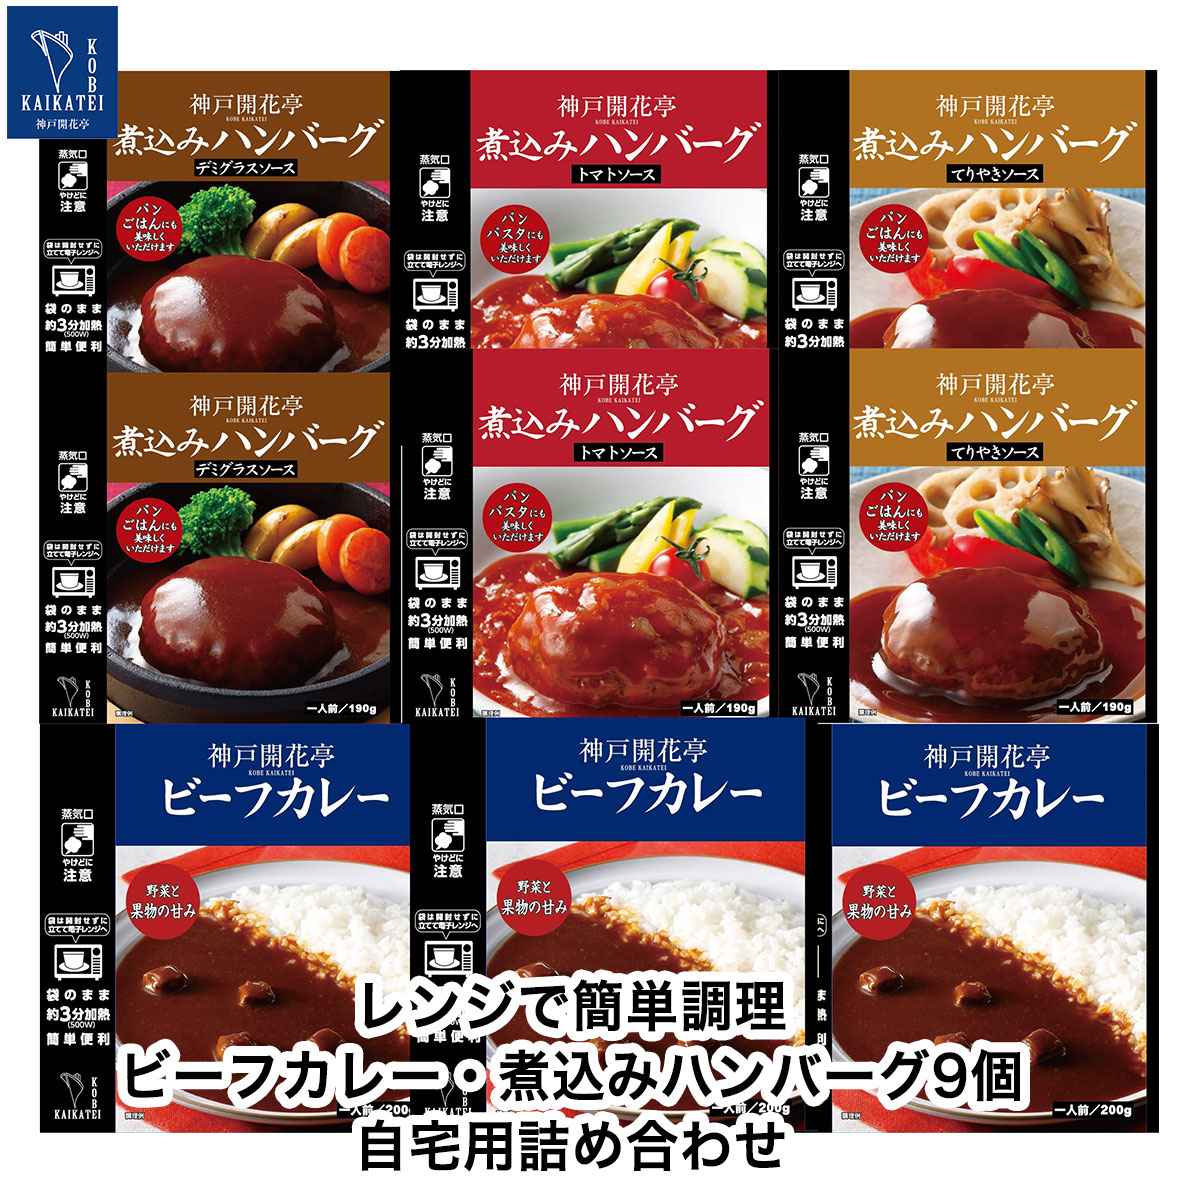 神戸開花亭 公式ストア レトルト 惣菜 食品 - Yahoo!ショッピング